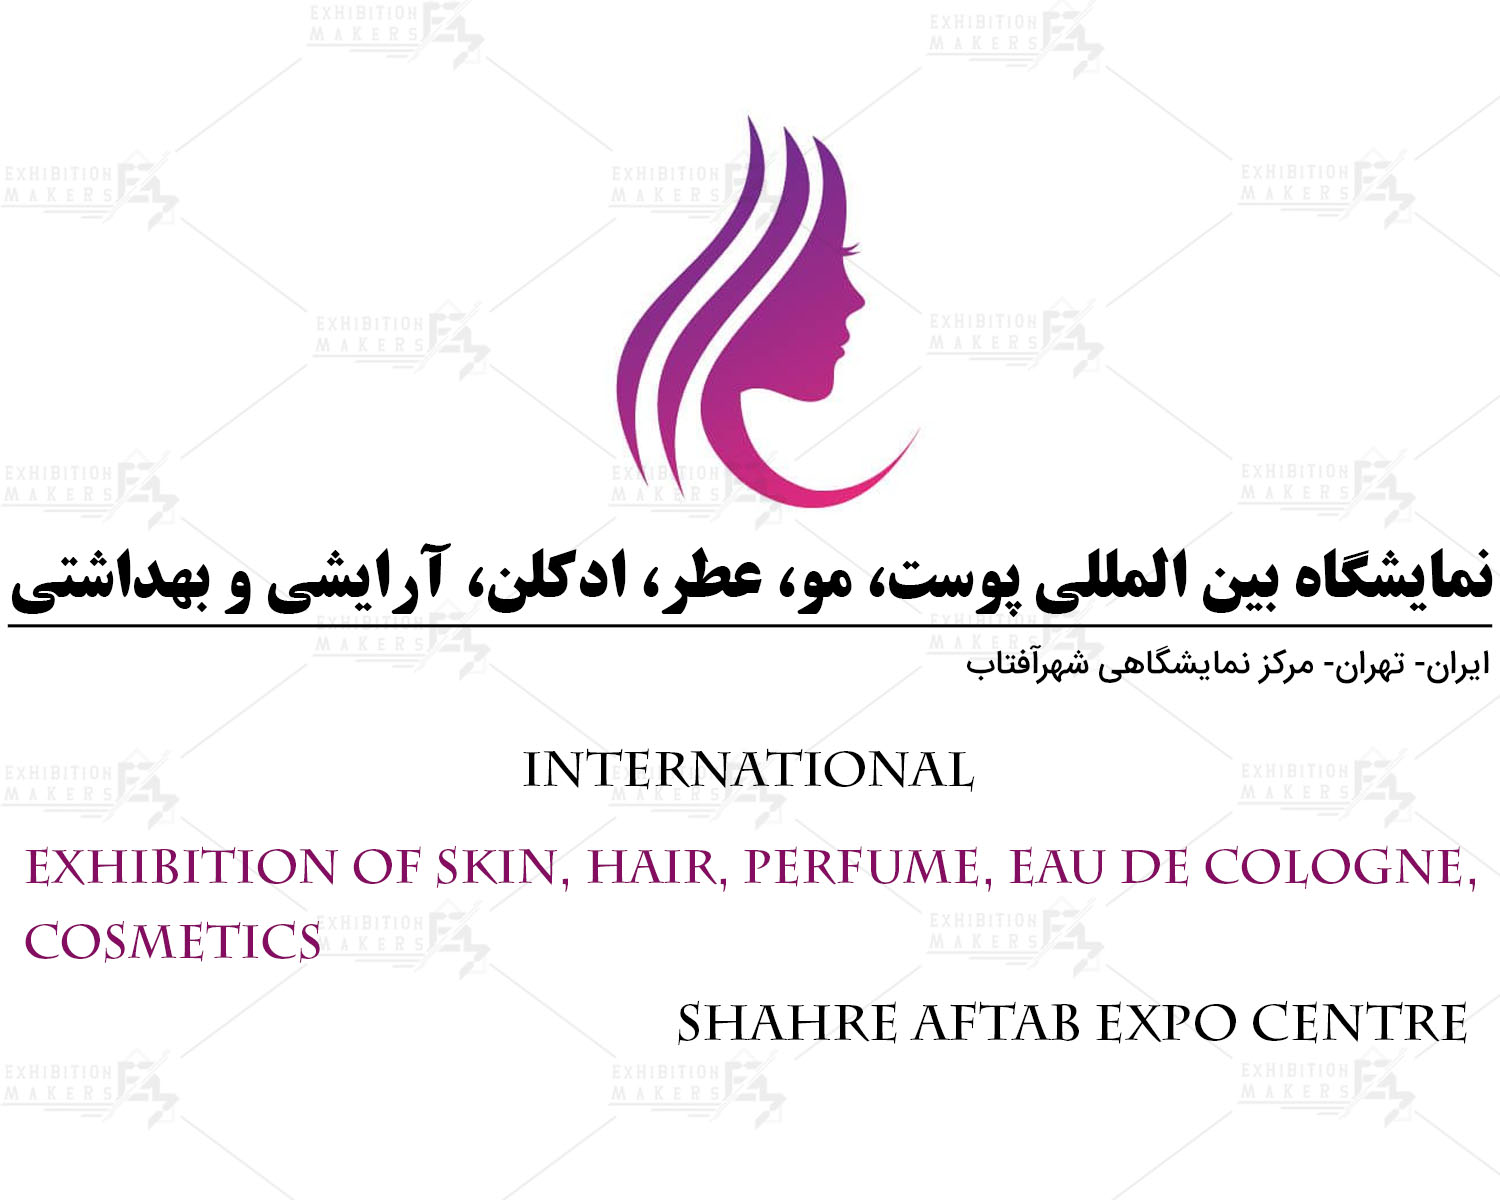 نمایشگاه بین المللی پوست، مو، عطر، ادکلن، آرایشی و بهداشتی ایران تهران